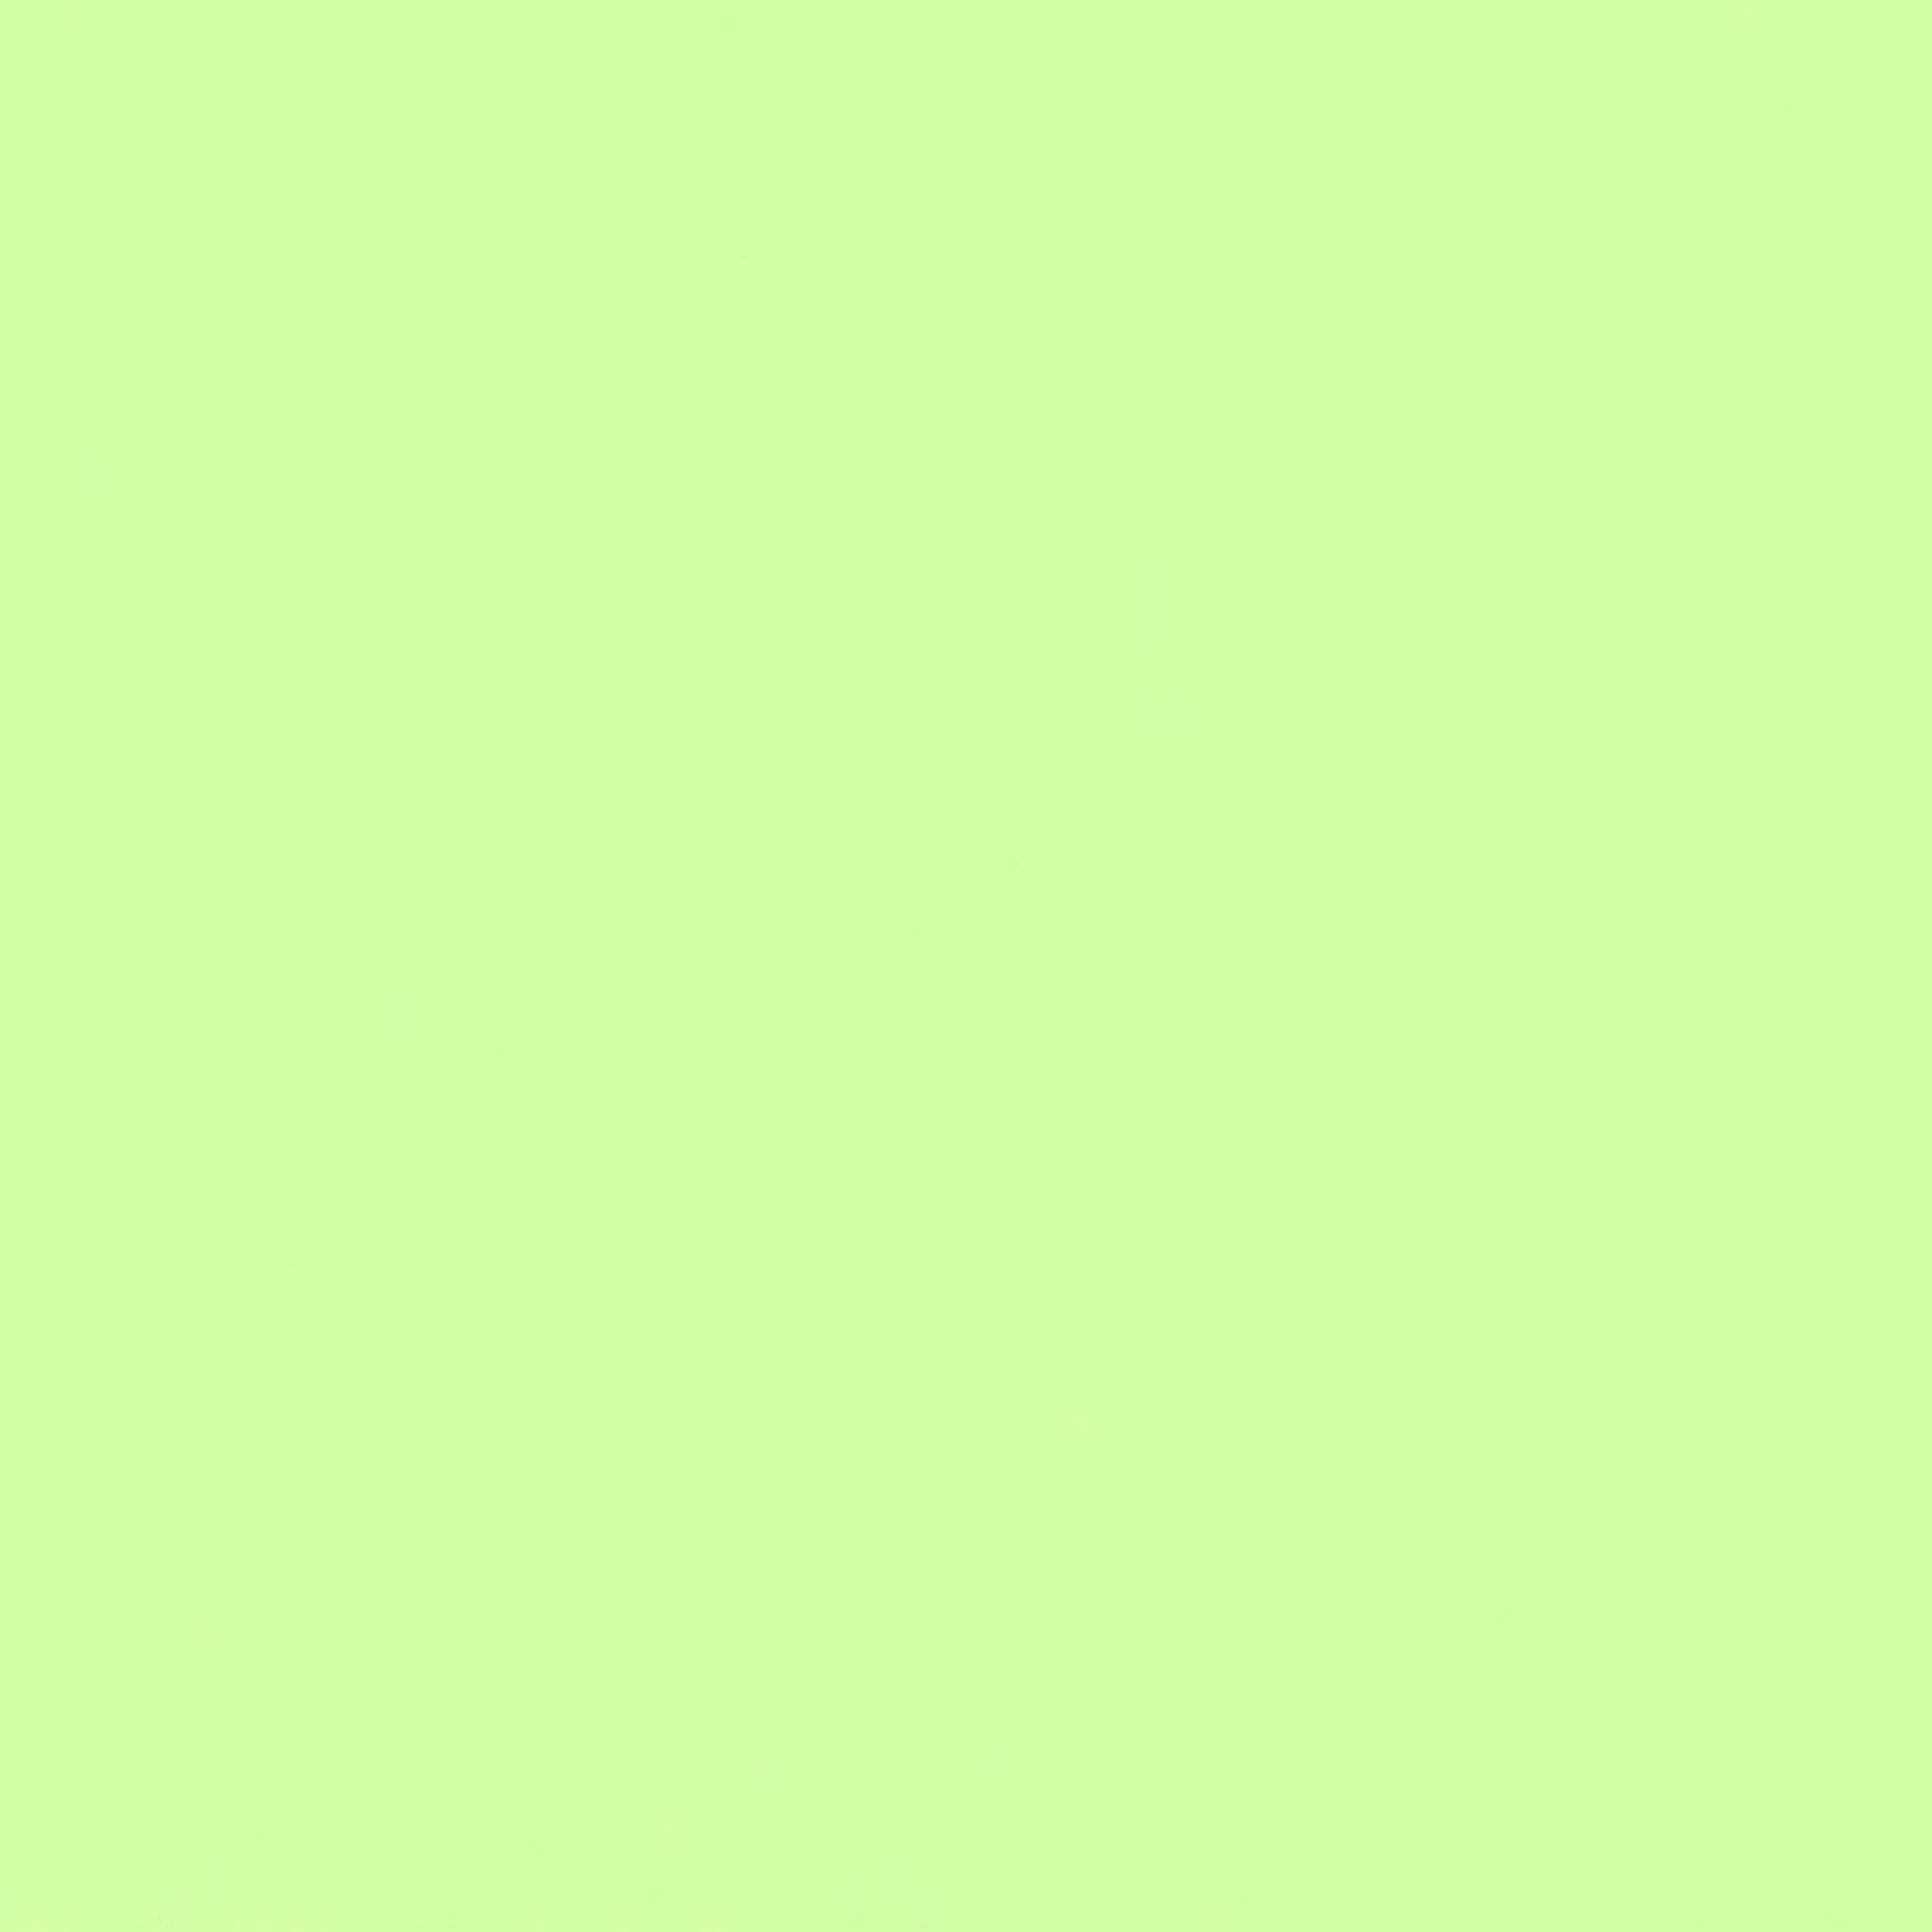 Spectrum Plain Mint Green Cotton Fabric - Makower 2000/G54